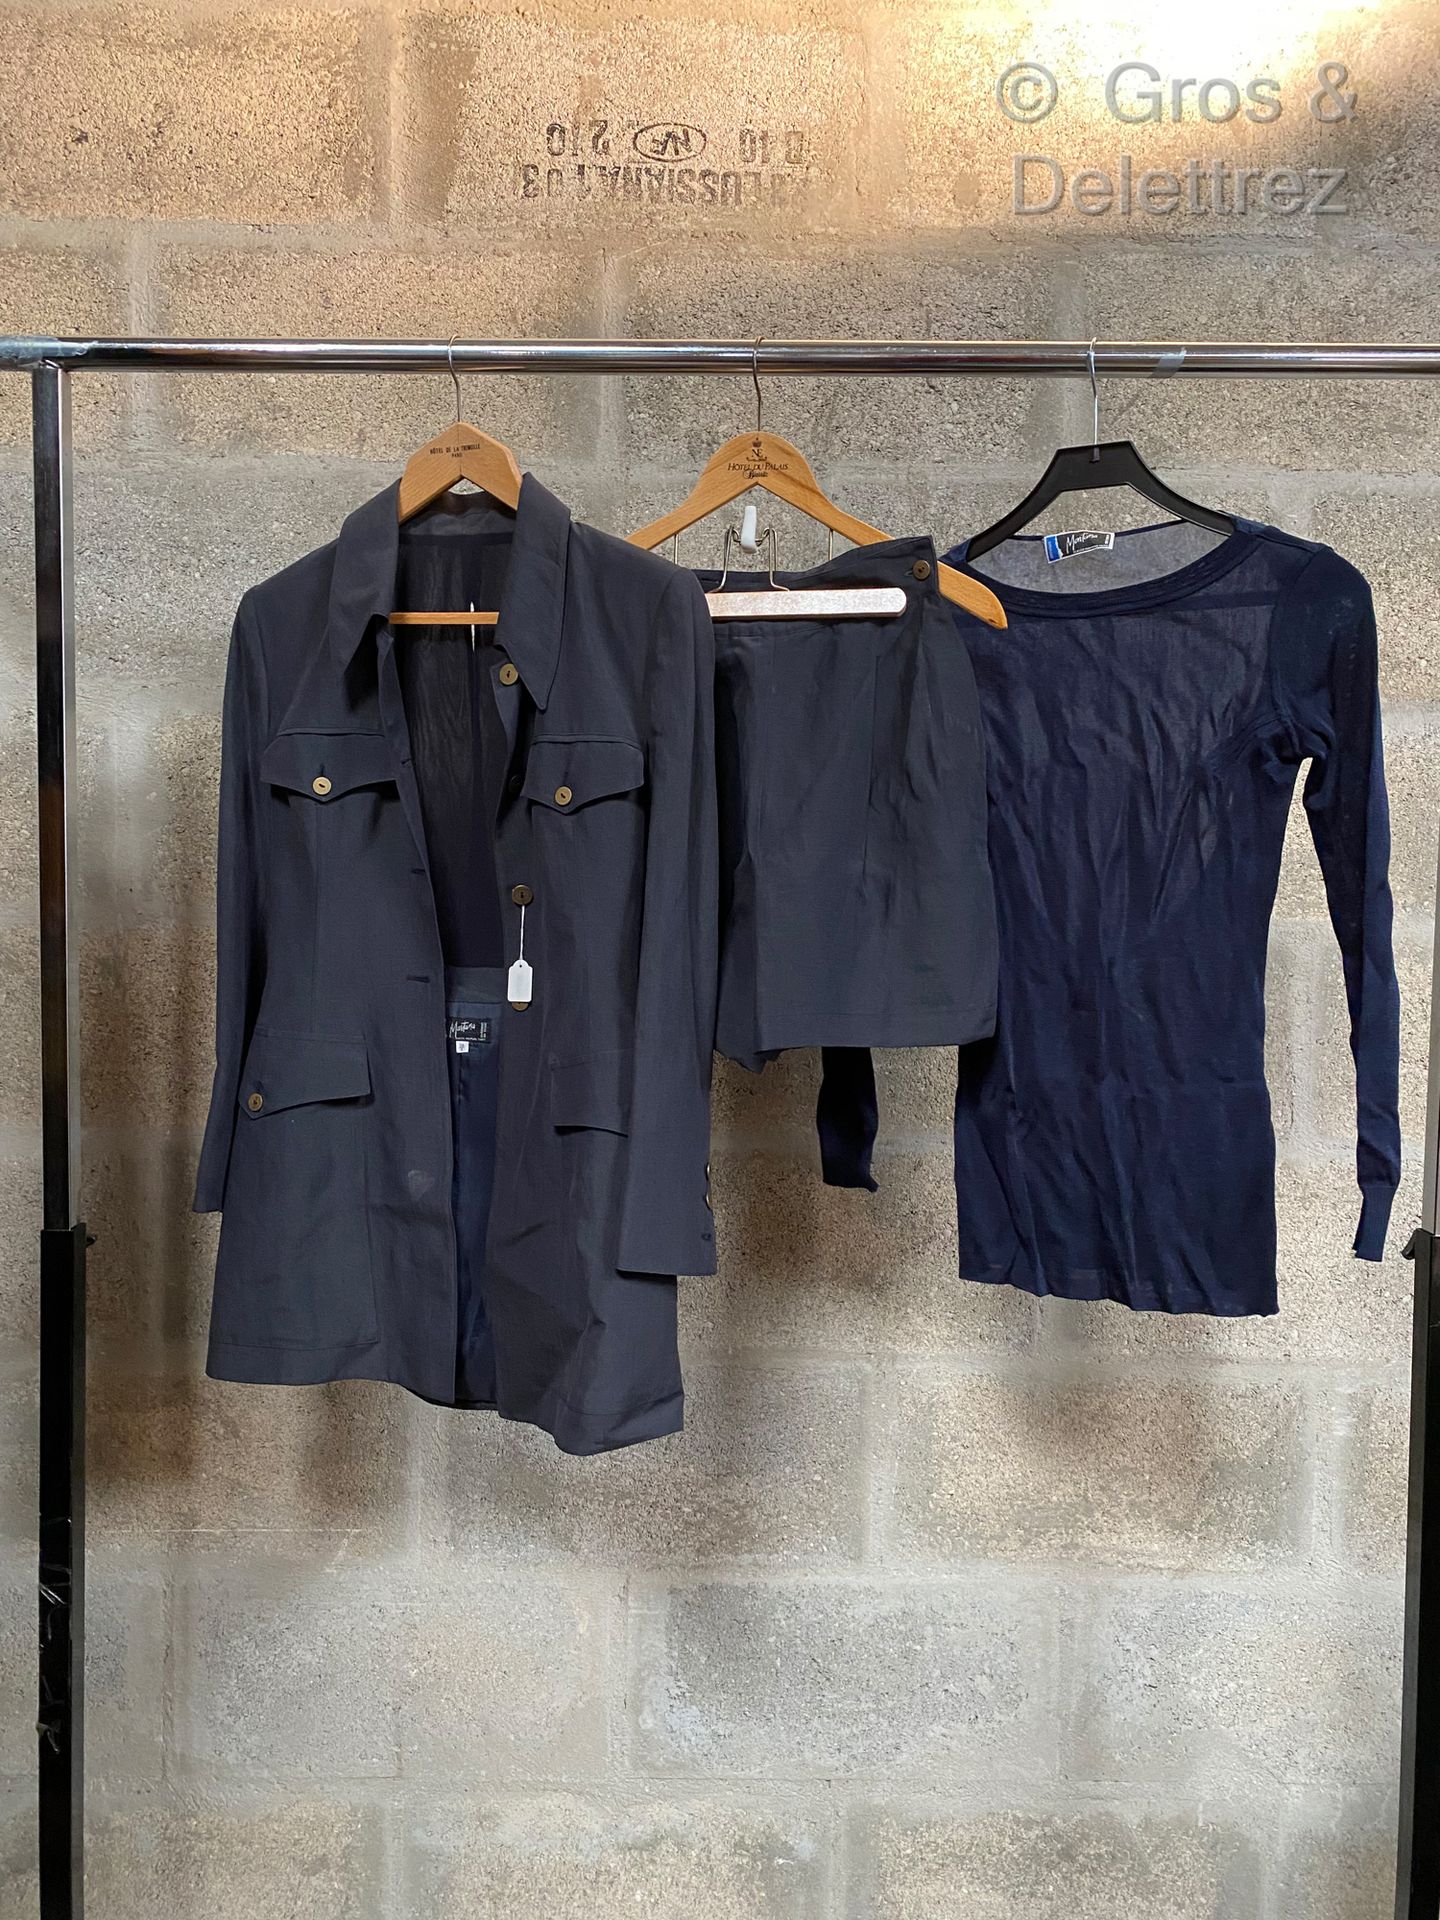 Null 蒙塔纳，一套包括亚麻布和藏青色丝绸外套，藏青色丝绸短裤和T恤衫，以及一套双排扣外套和藏青色丝绸短裤。